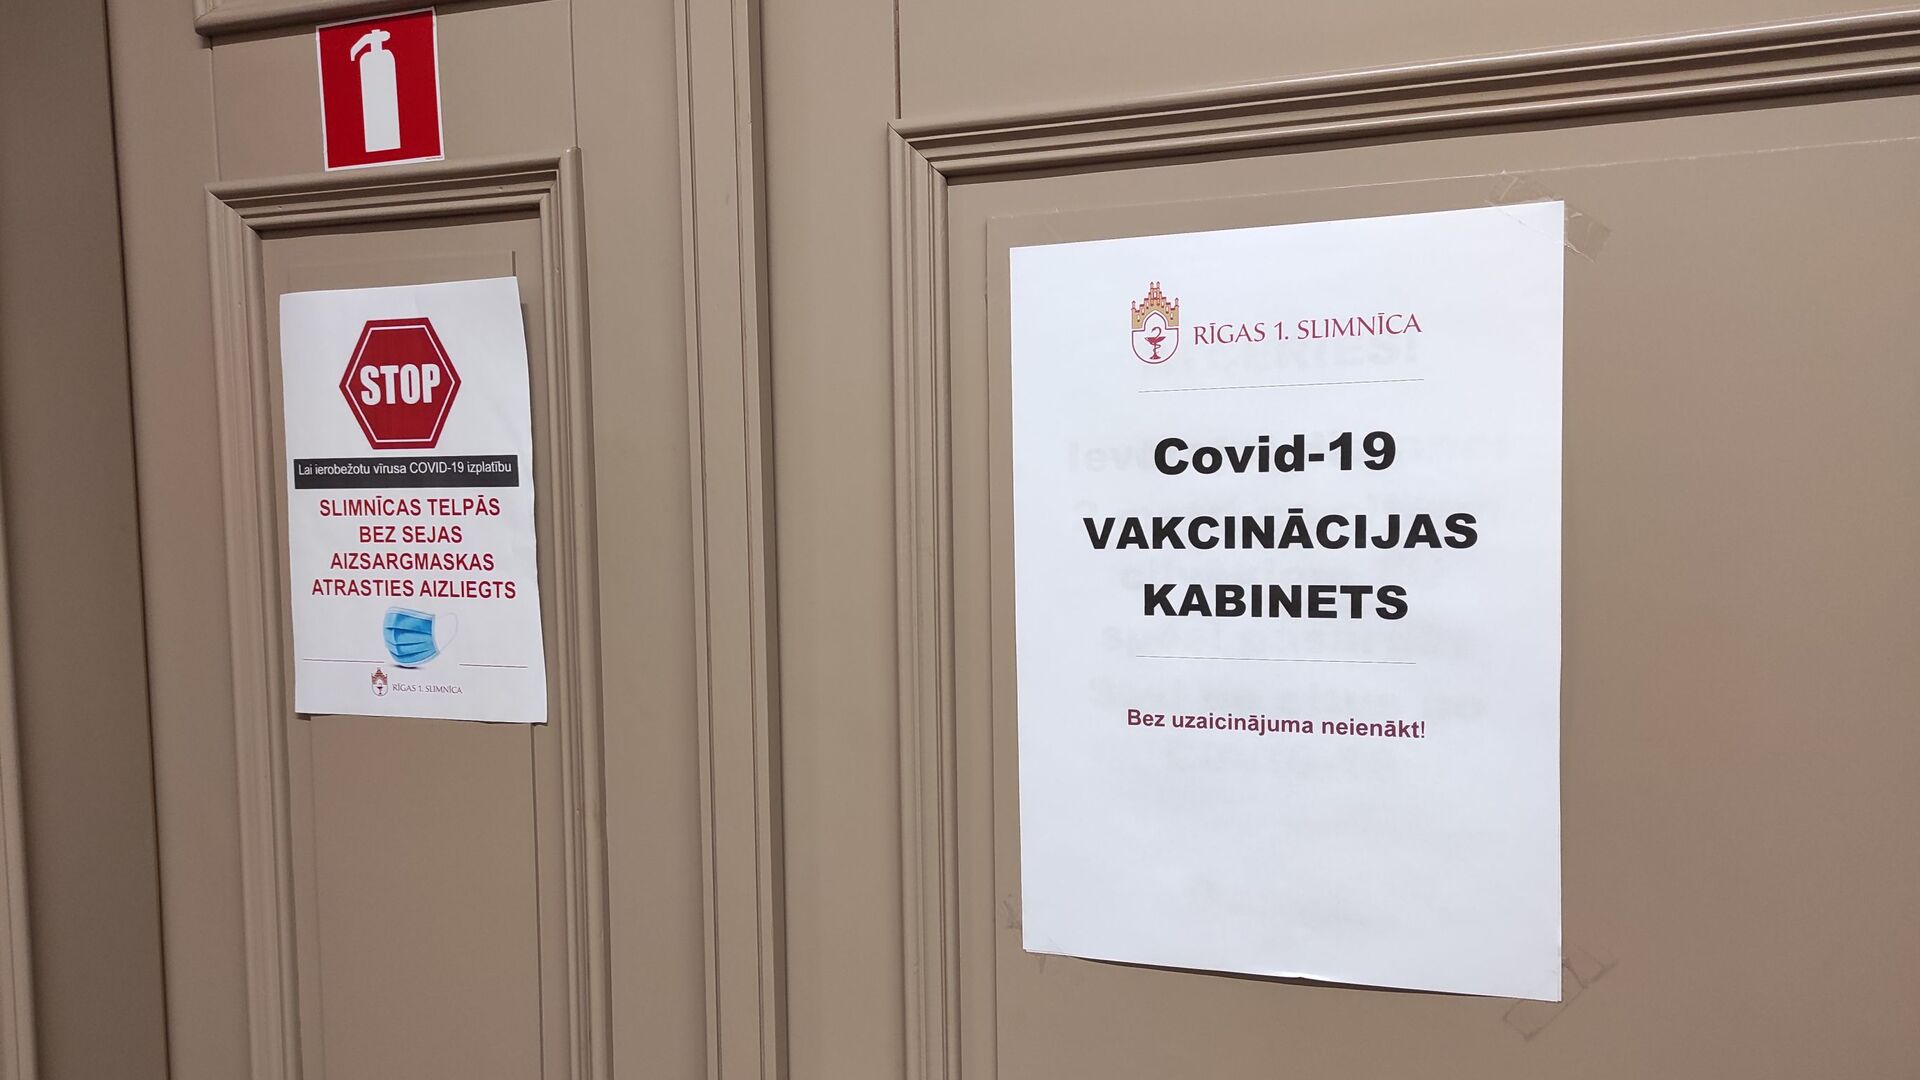 Кабинет вакцинации в Первой городской больнице Риги  - Sputnik Латвия, 1920, 16.02.2021